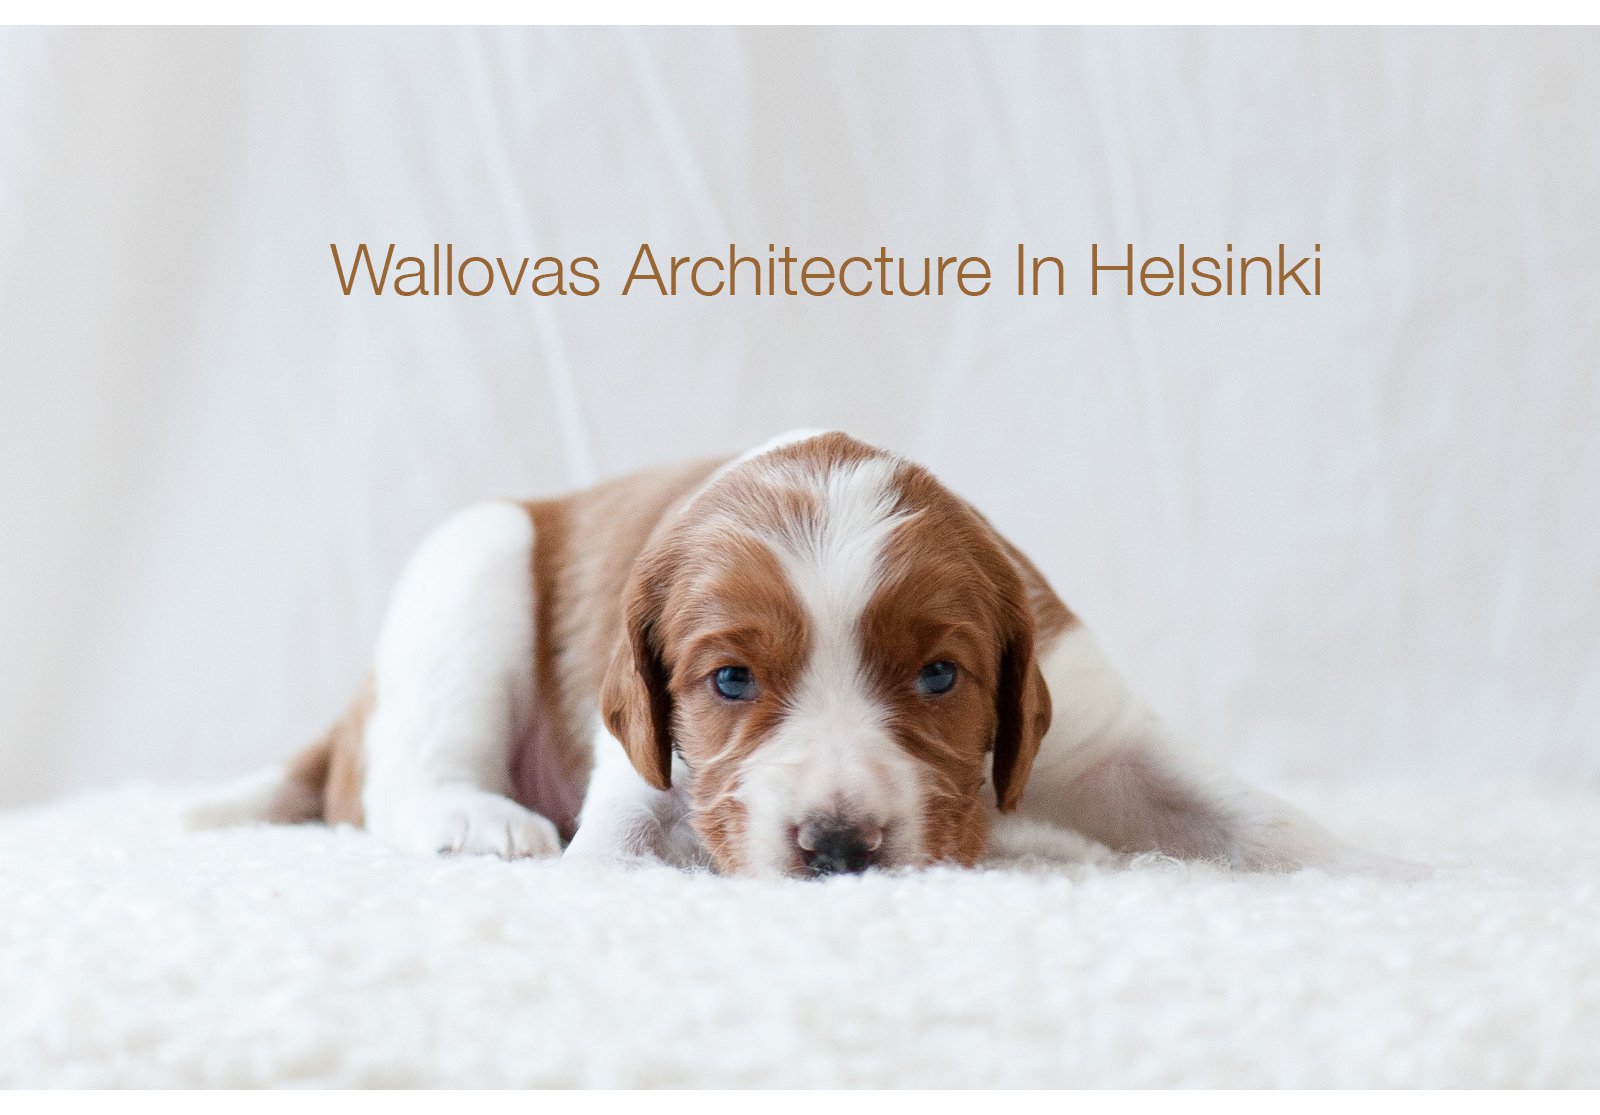 Wallovas Architecture in Helsinki